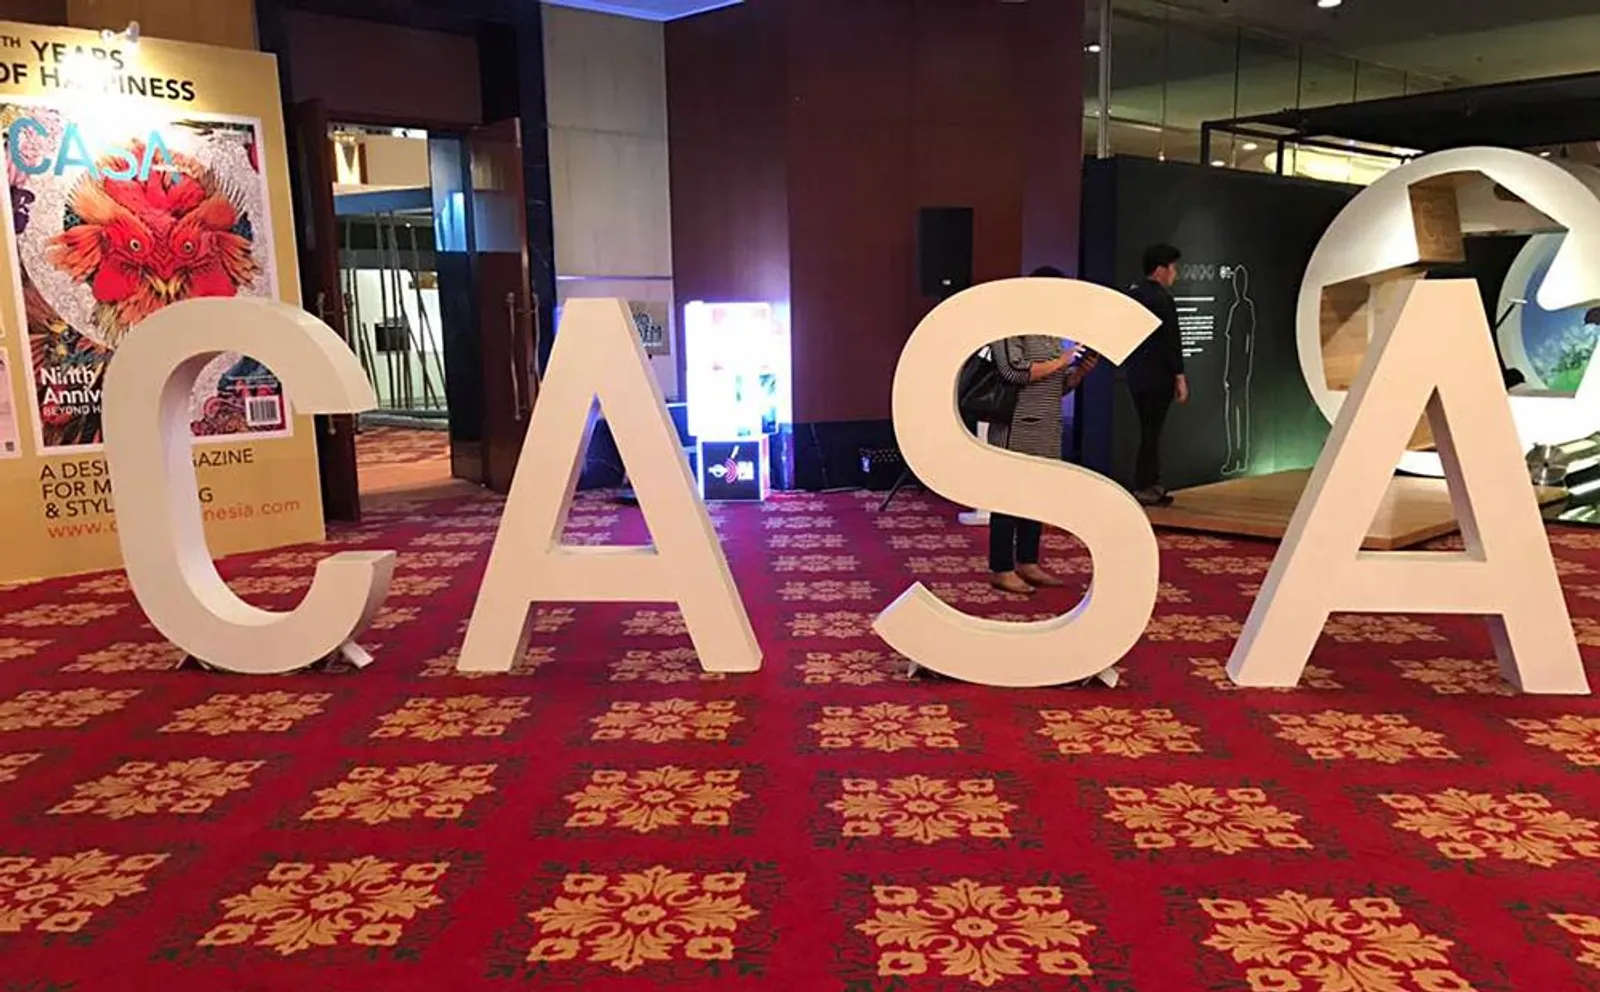 Kembali Diadakan, CASA Indonesia 2017 Dukung Desainer Lokal 